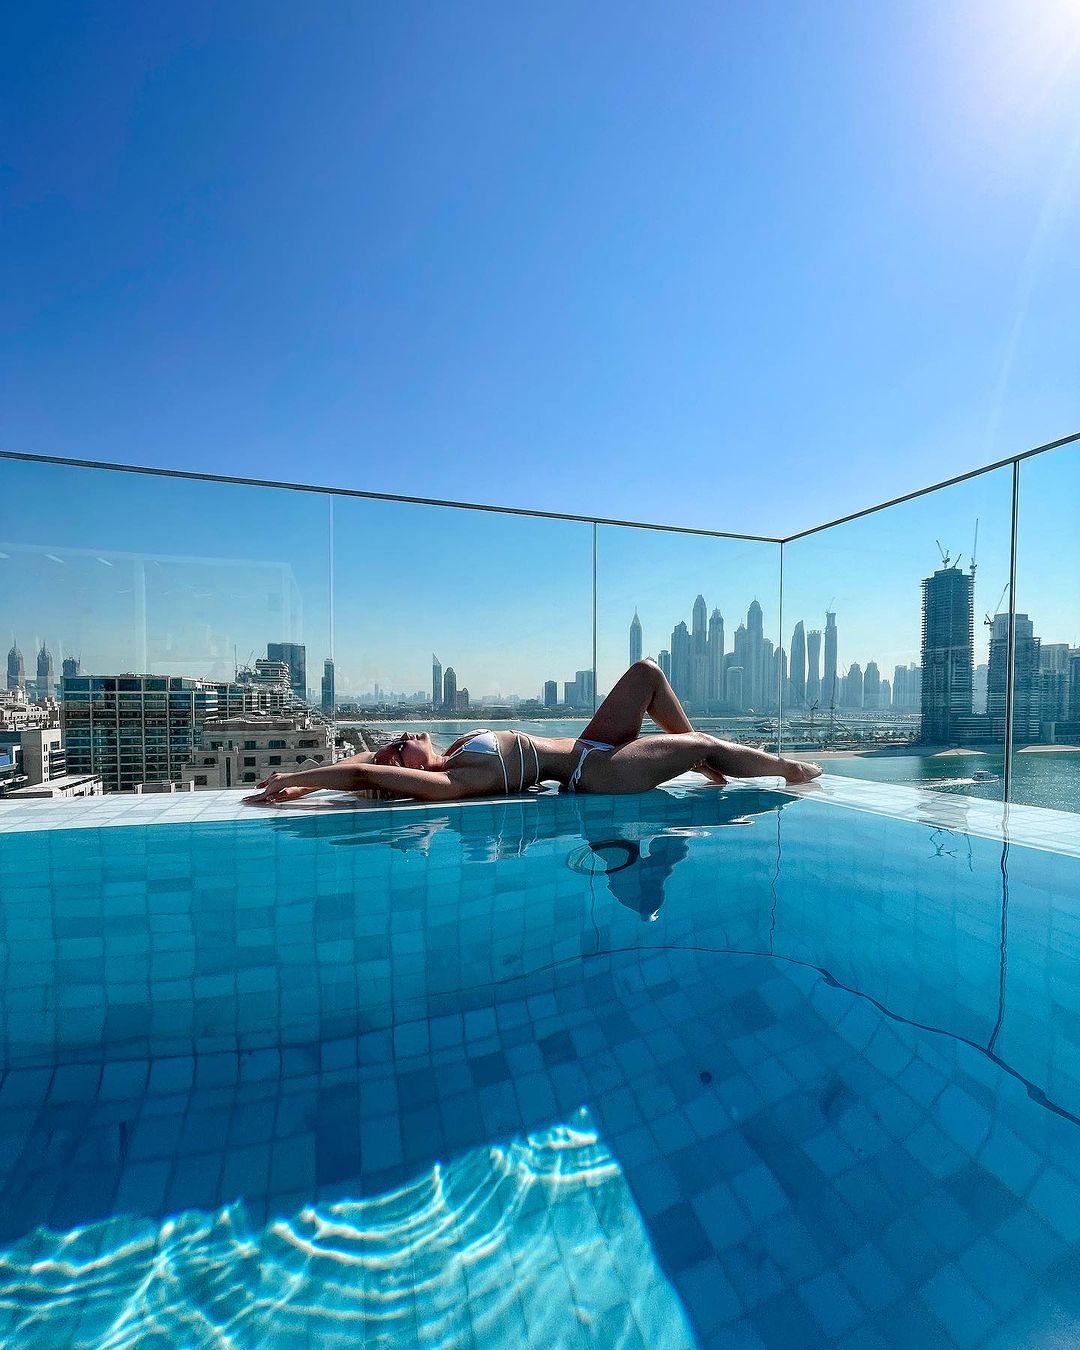 Tonino Lamborghini Mare Nostrum Pool in Dubai